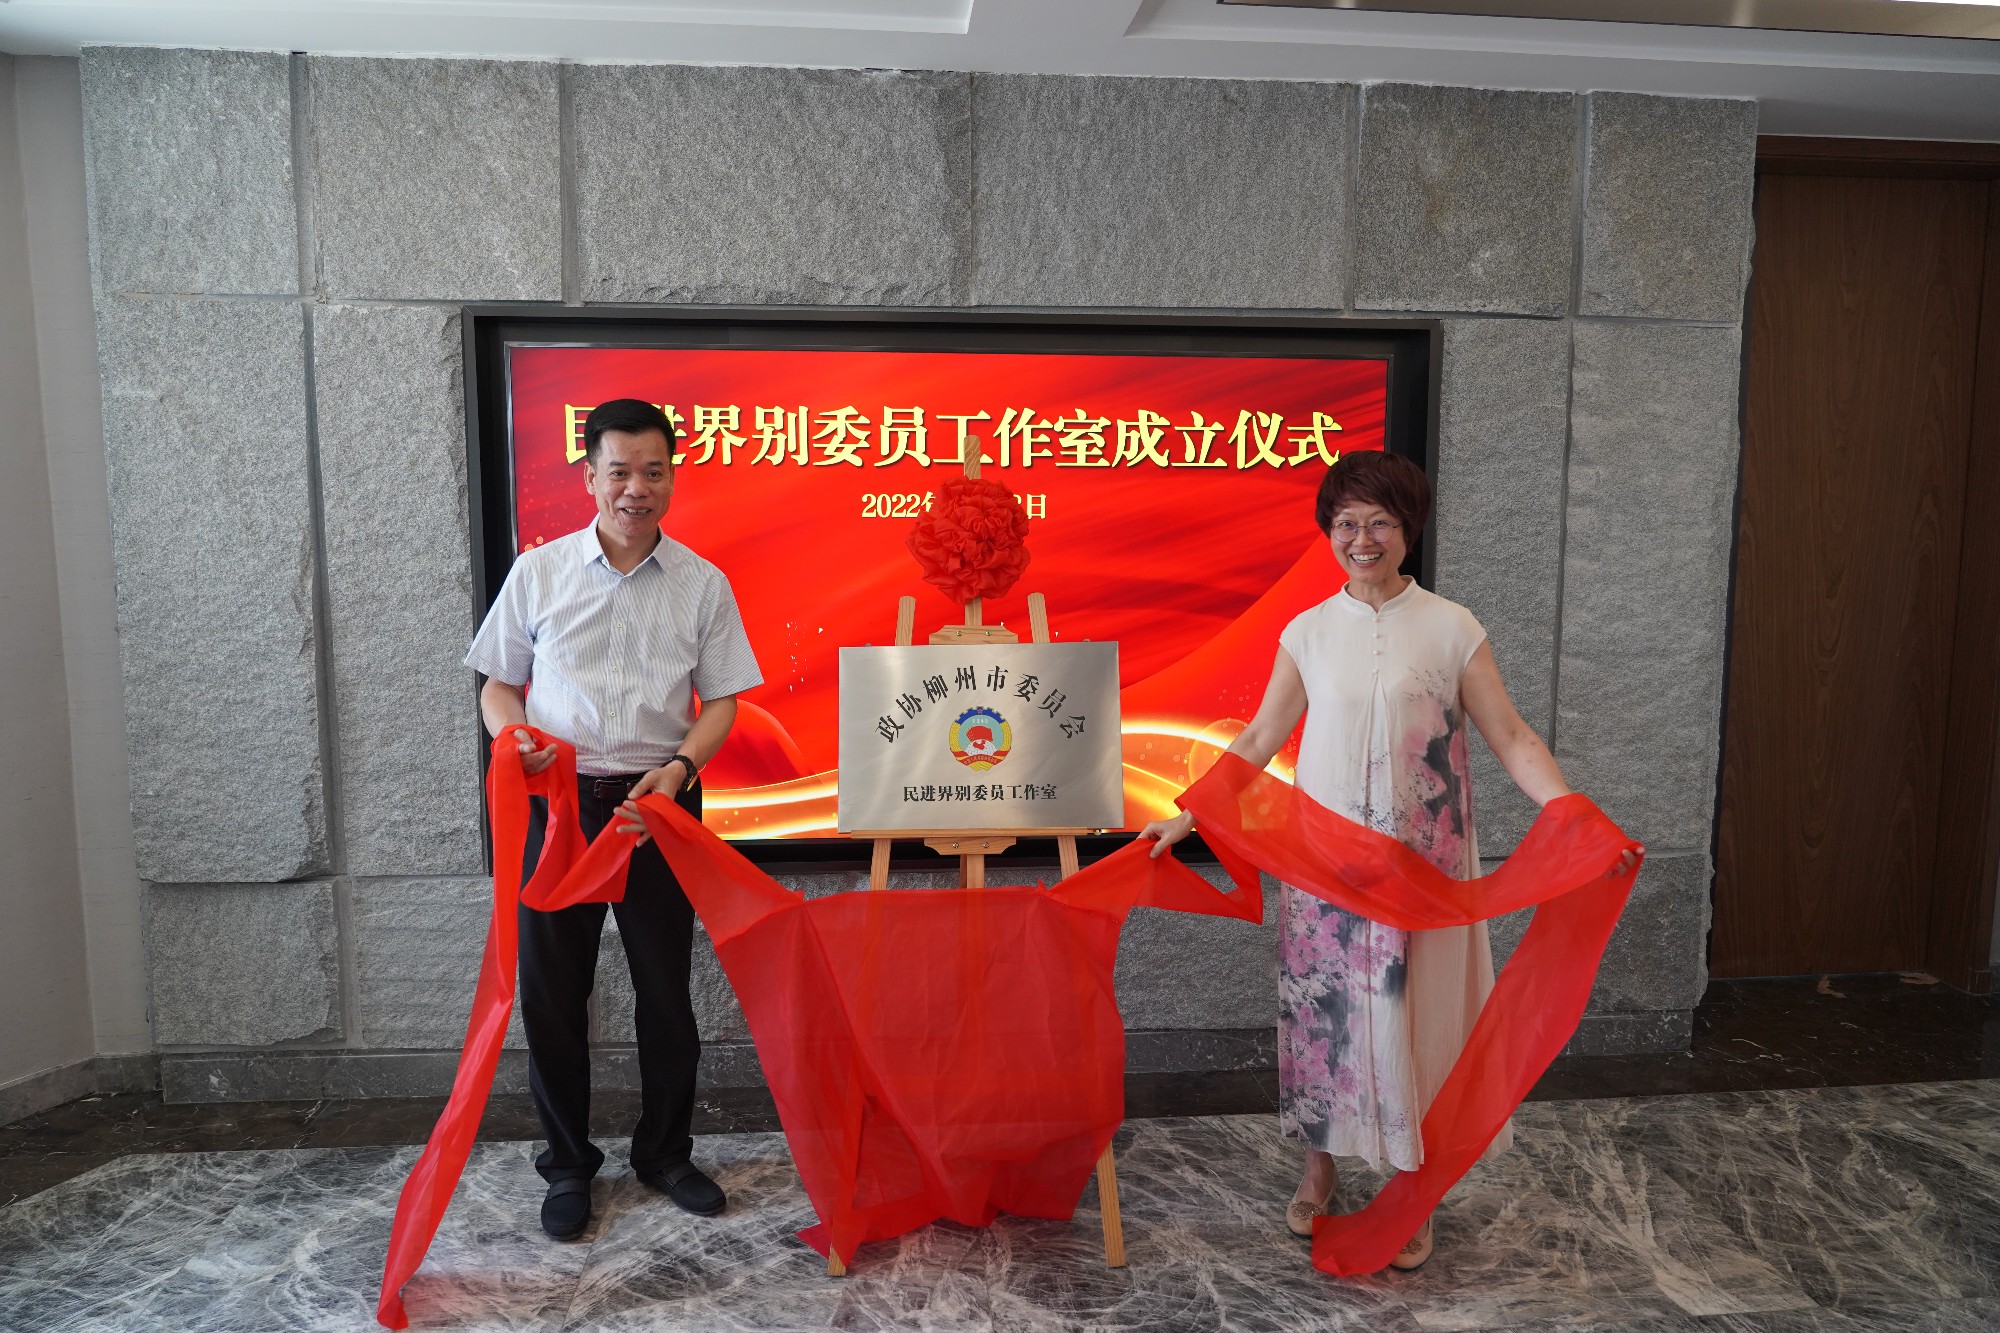 柳州市政协民进界别委员工作室挂牌成立